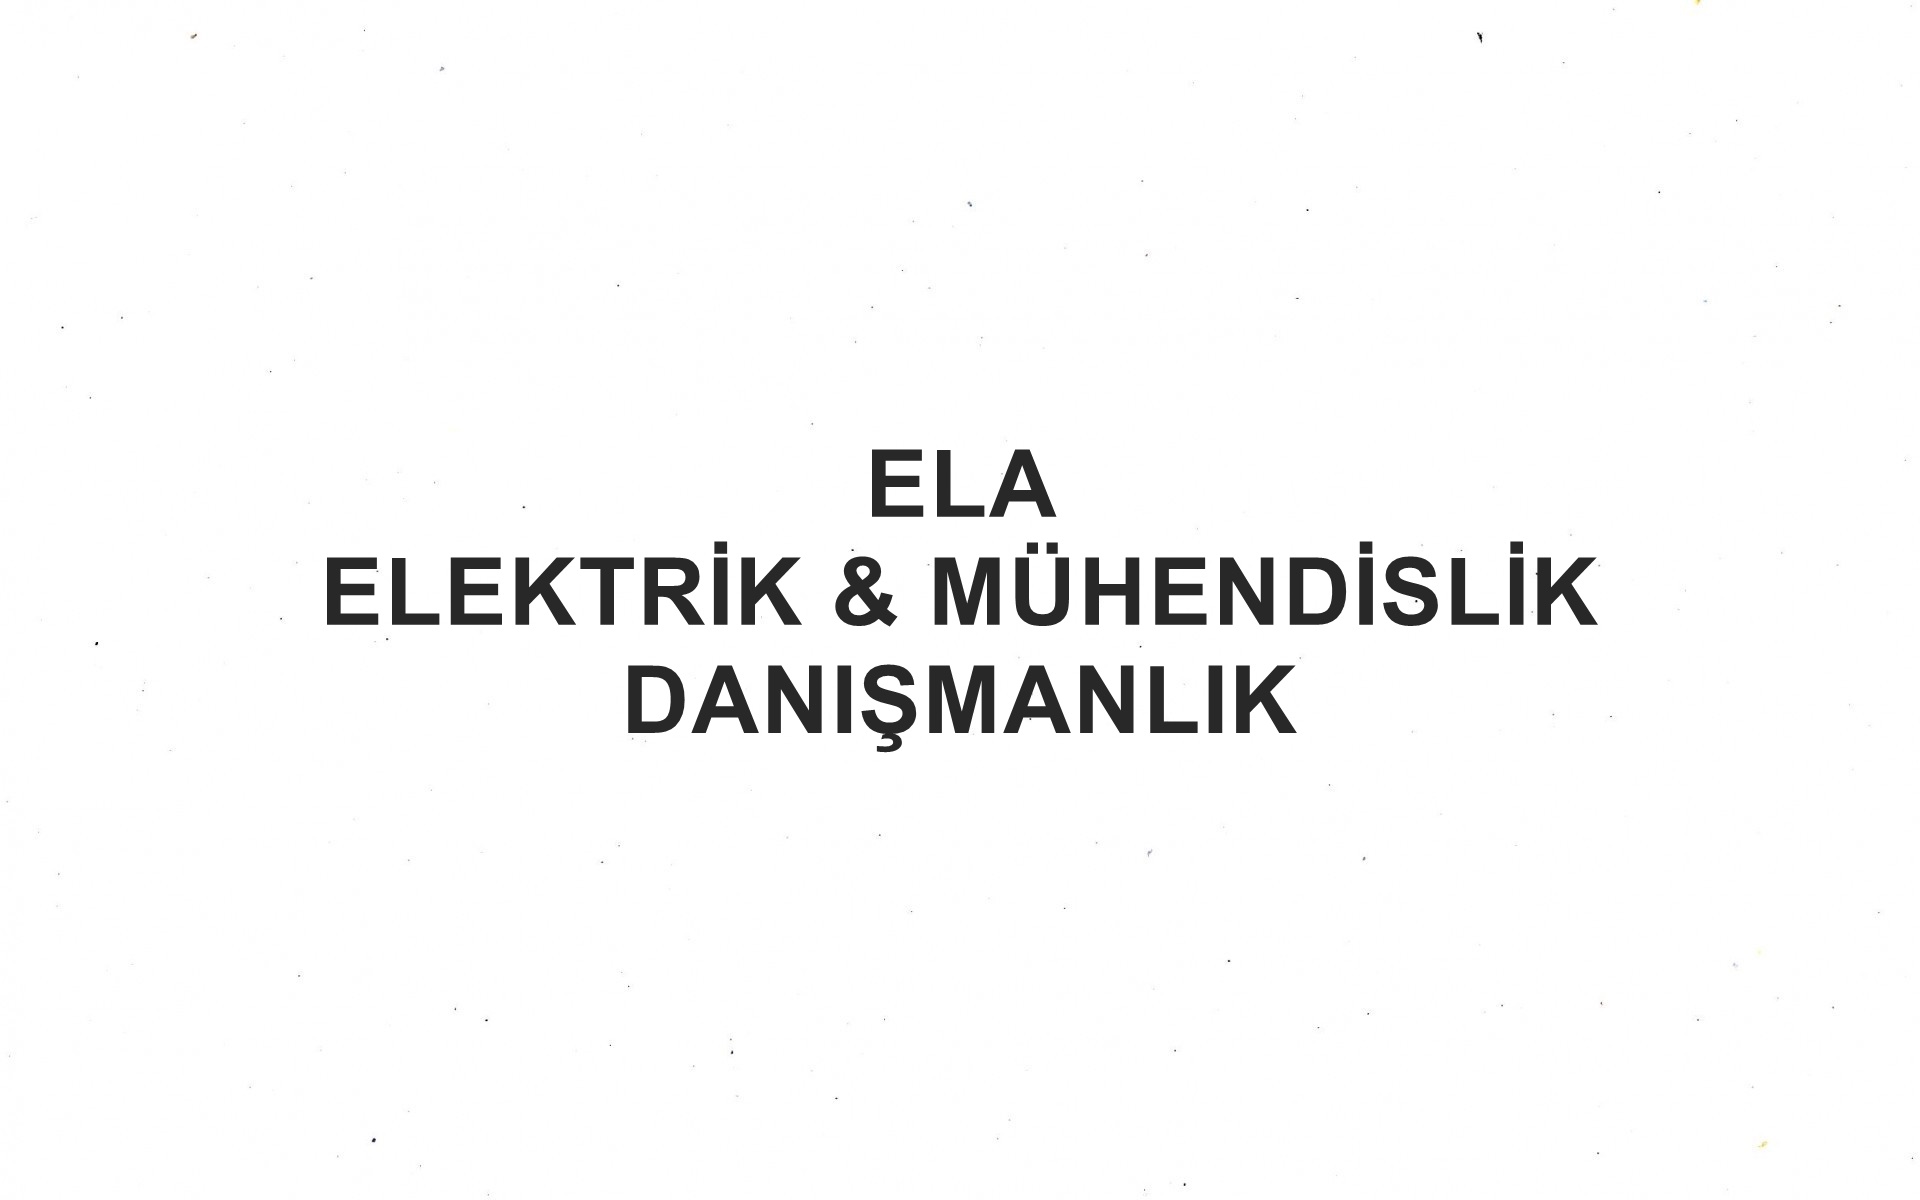 Ela Elektrik & Mühendislik Danışmanlık